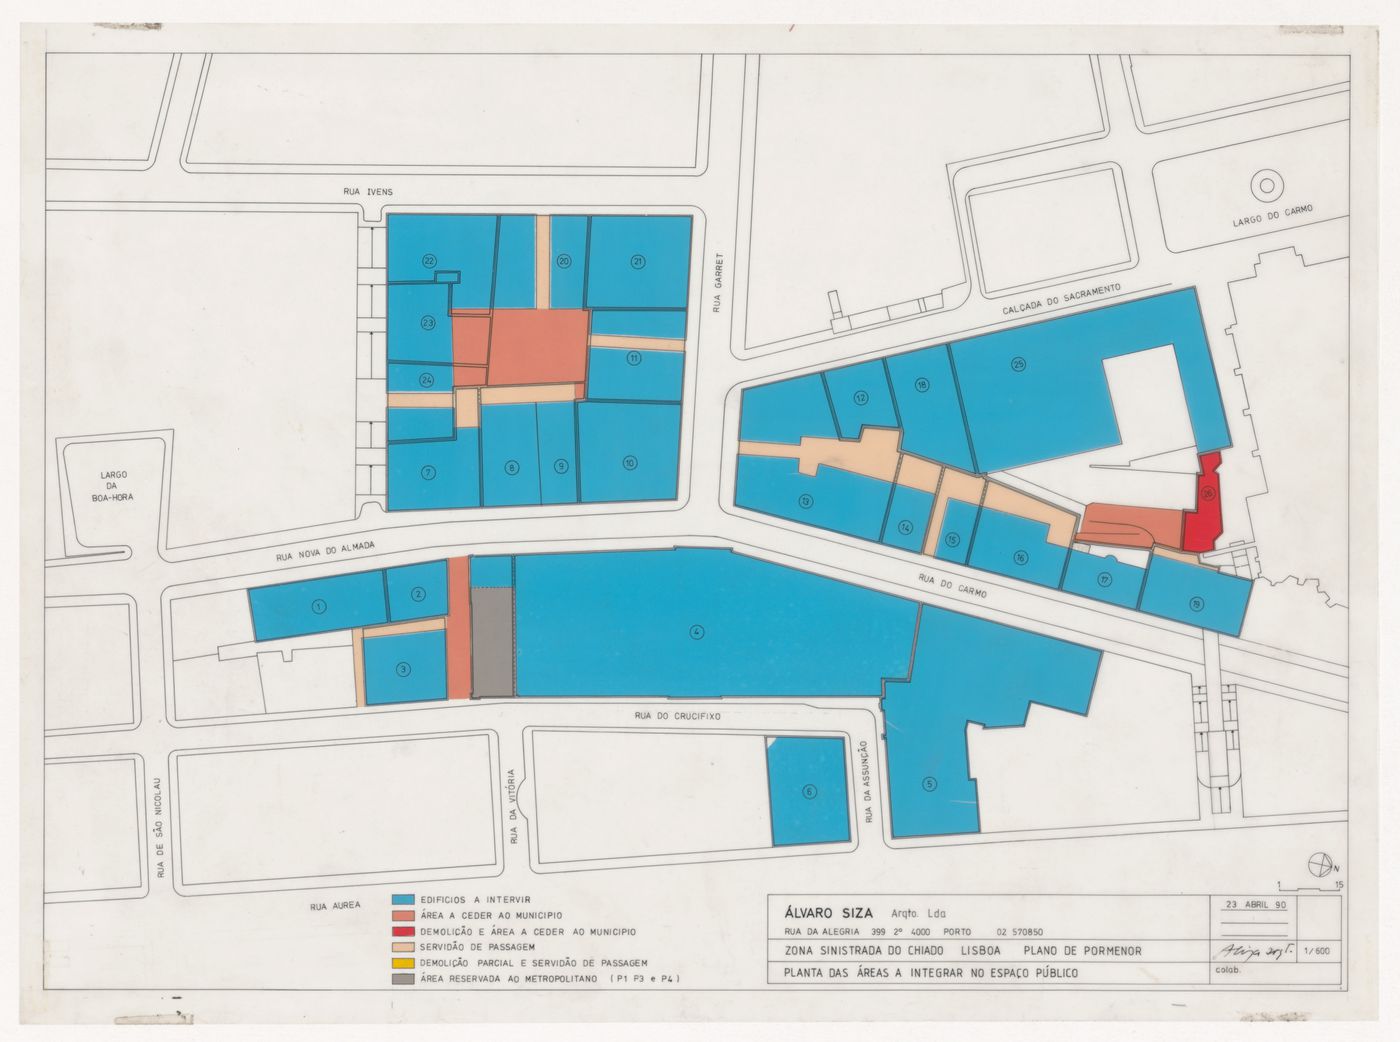 Plan for Reconstrução do Chiado [Reconstruction of the Chiado area], Lisbon